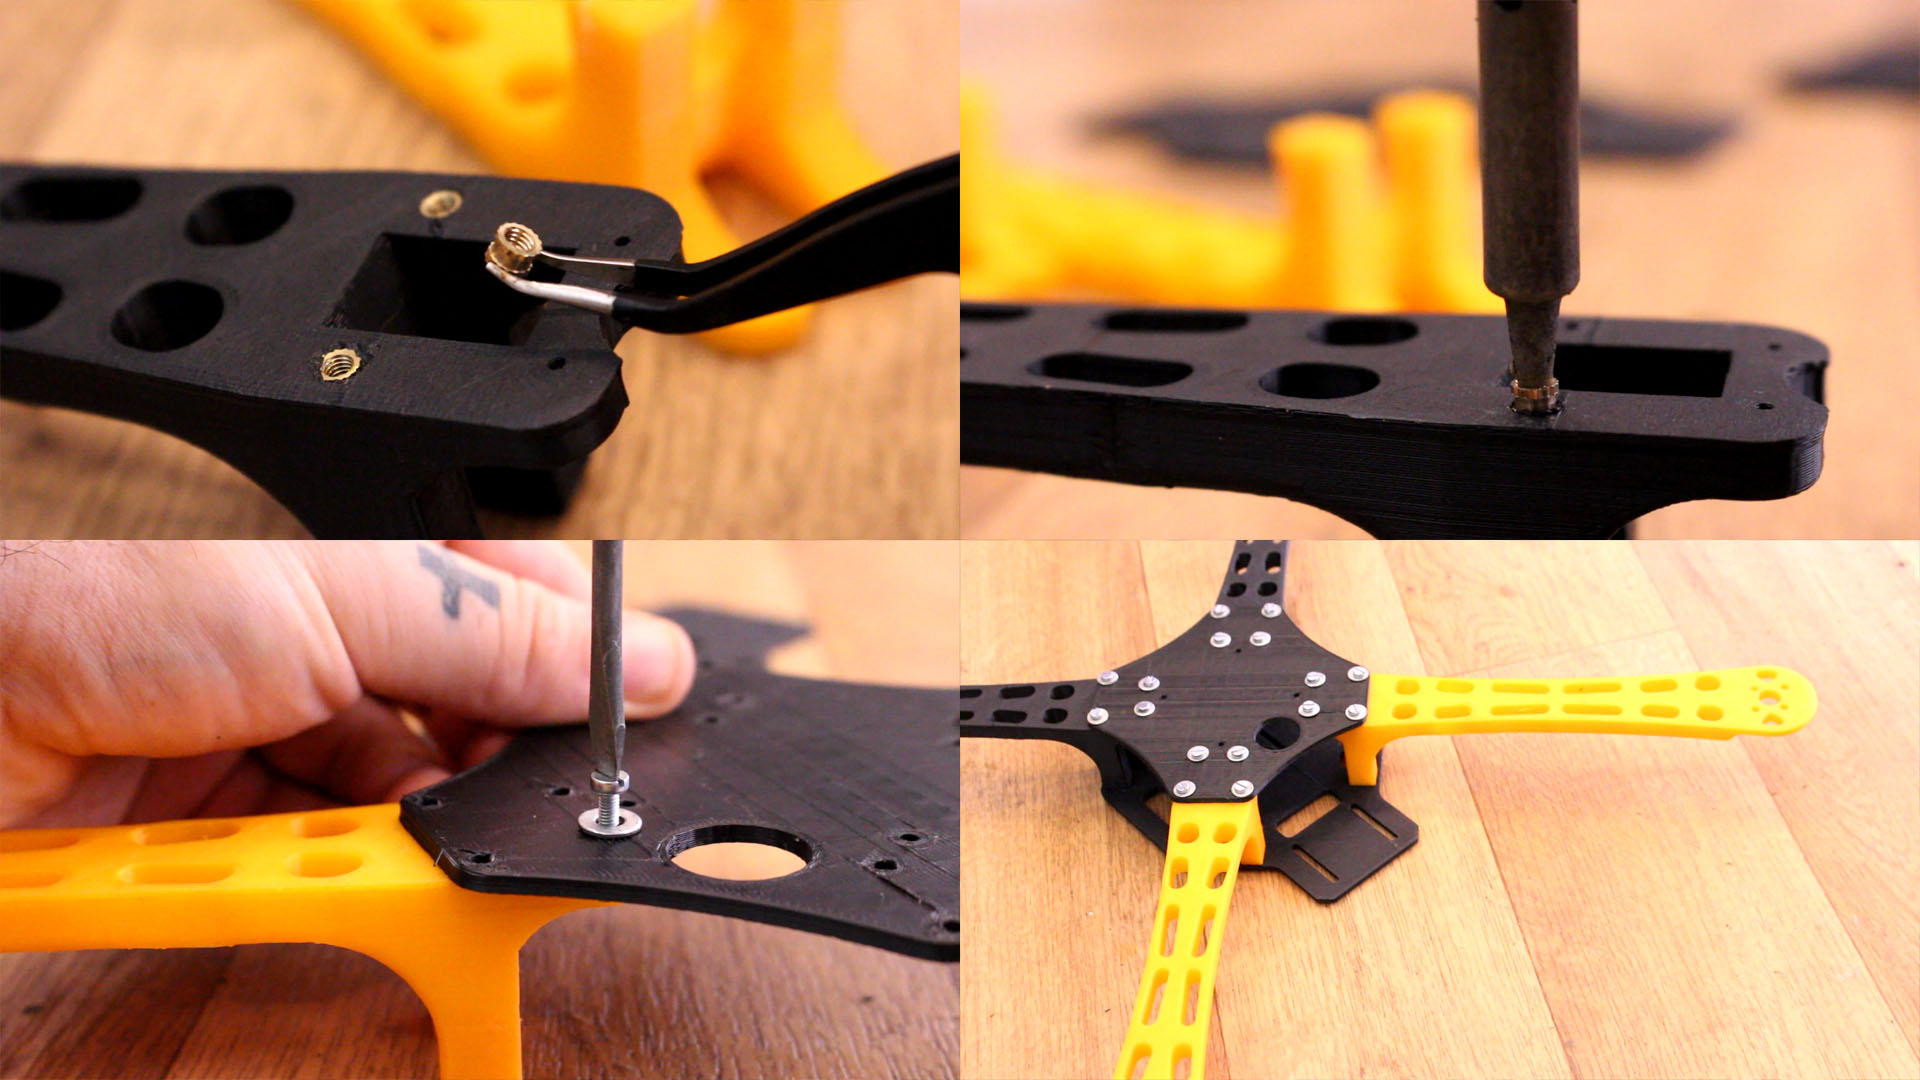 3D printed F450 DJI drone mount